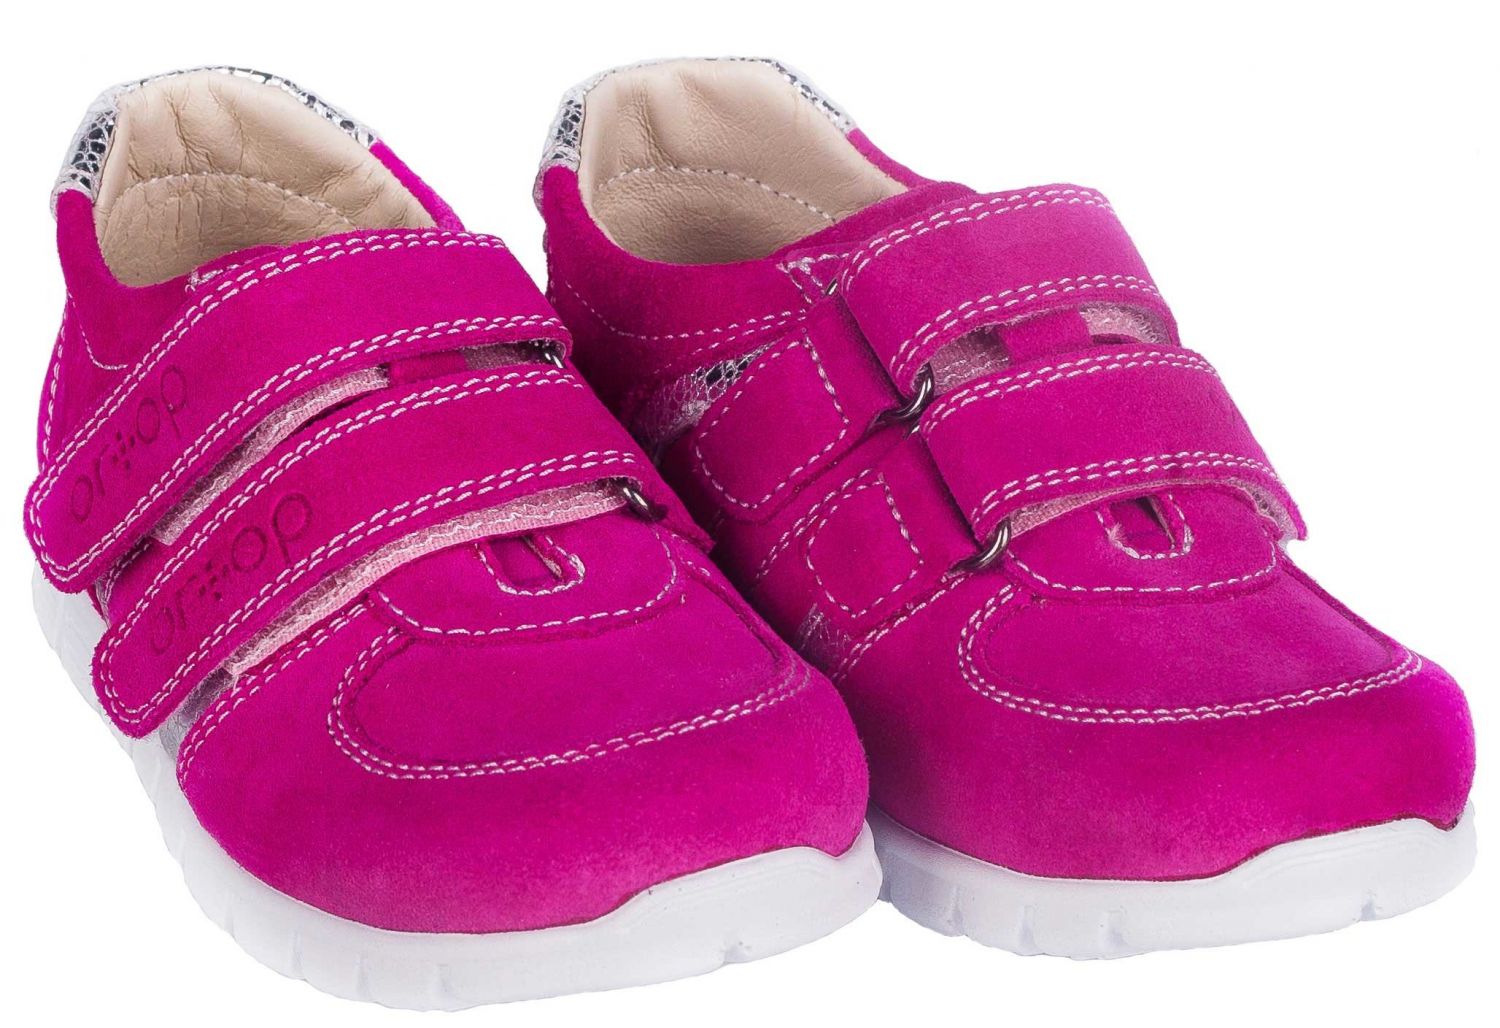 Ортопедичні кросівки для дівчинки, на липучках 101-Pink